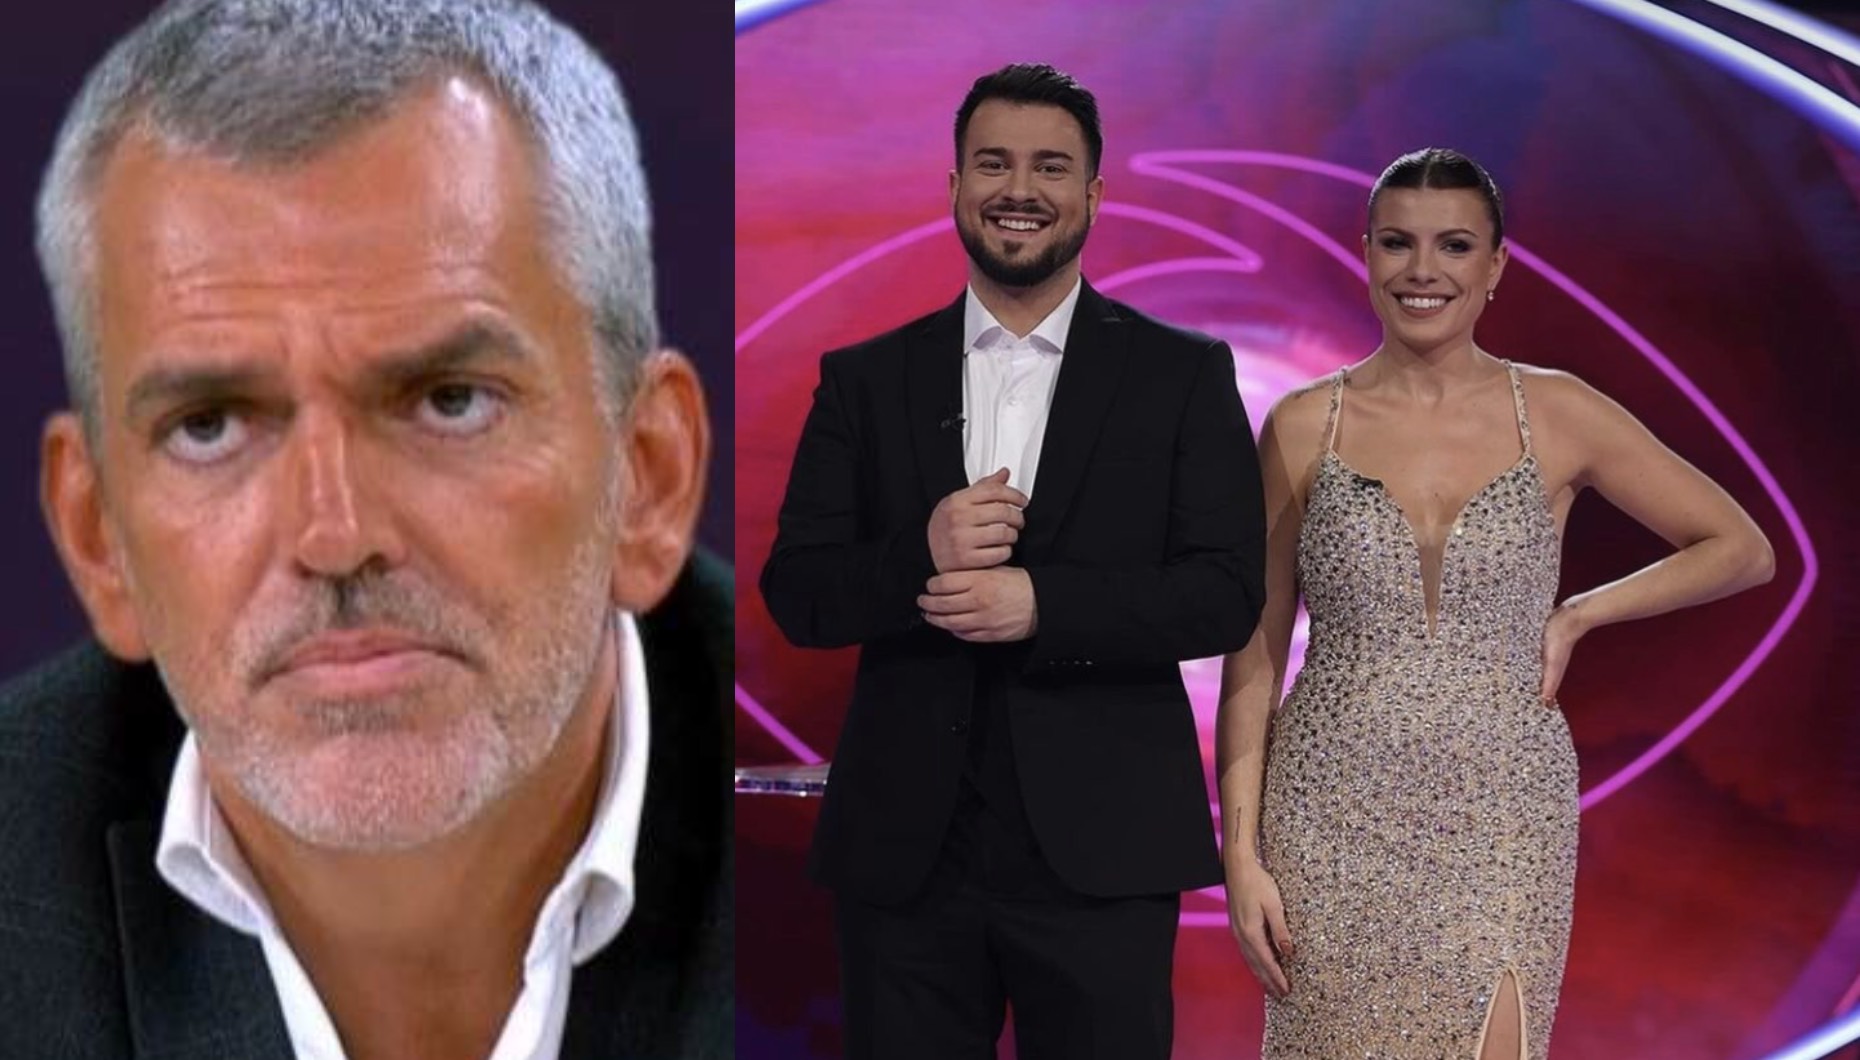 José Gouveia da CMTV sobre Márcia Soares: "Não lhe acho graça, foi muito a reboque do Francisco Monteiro"